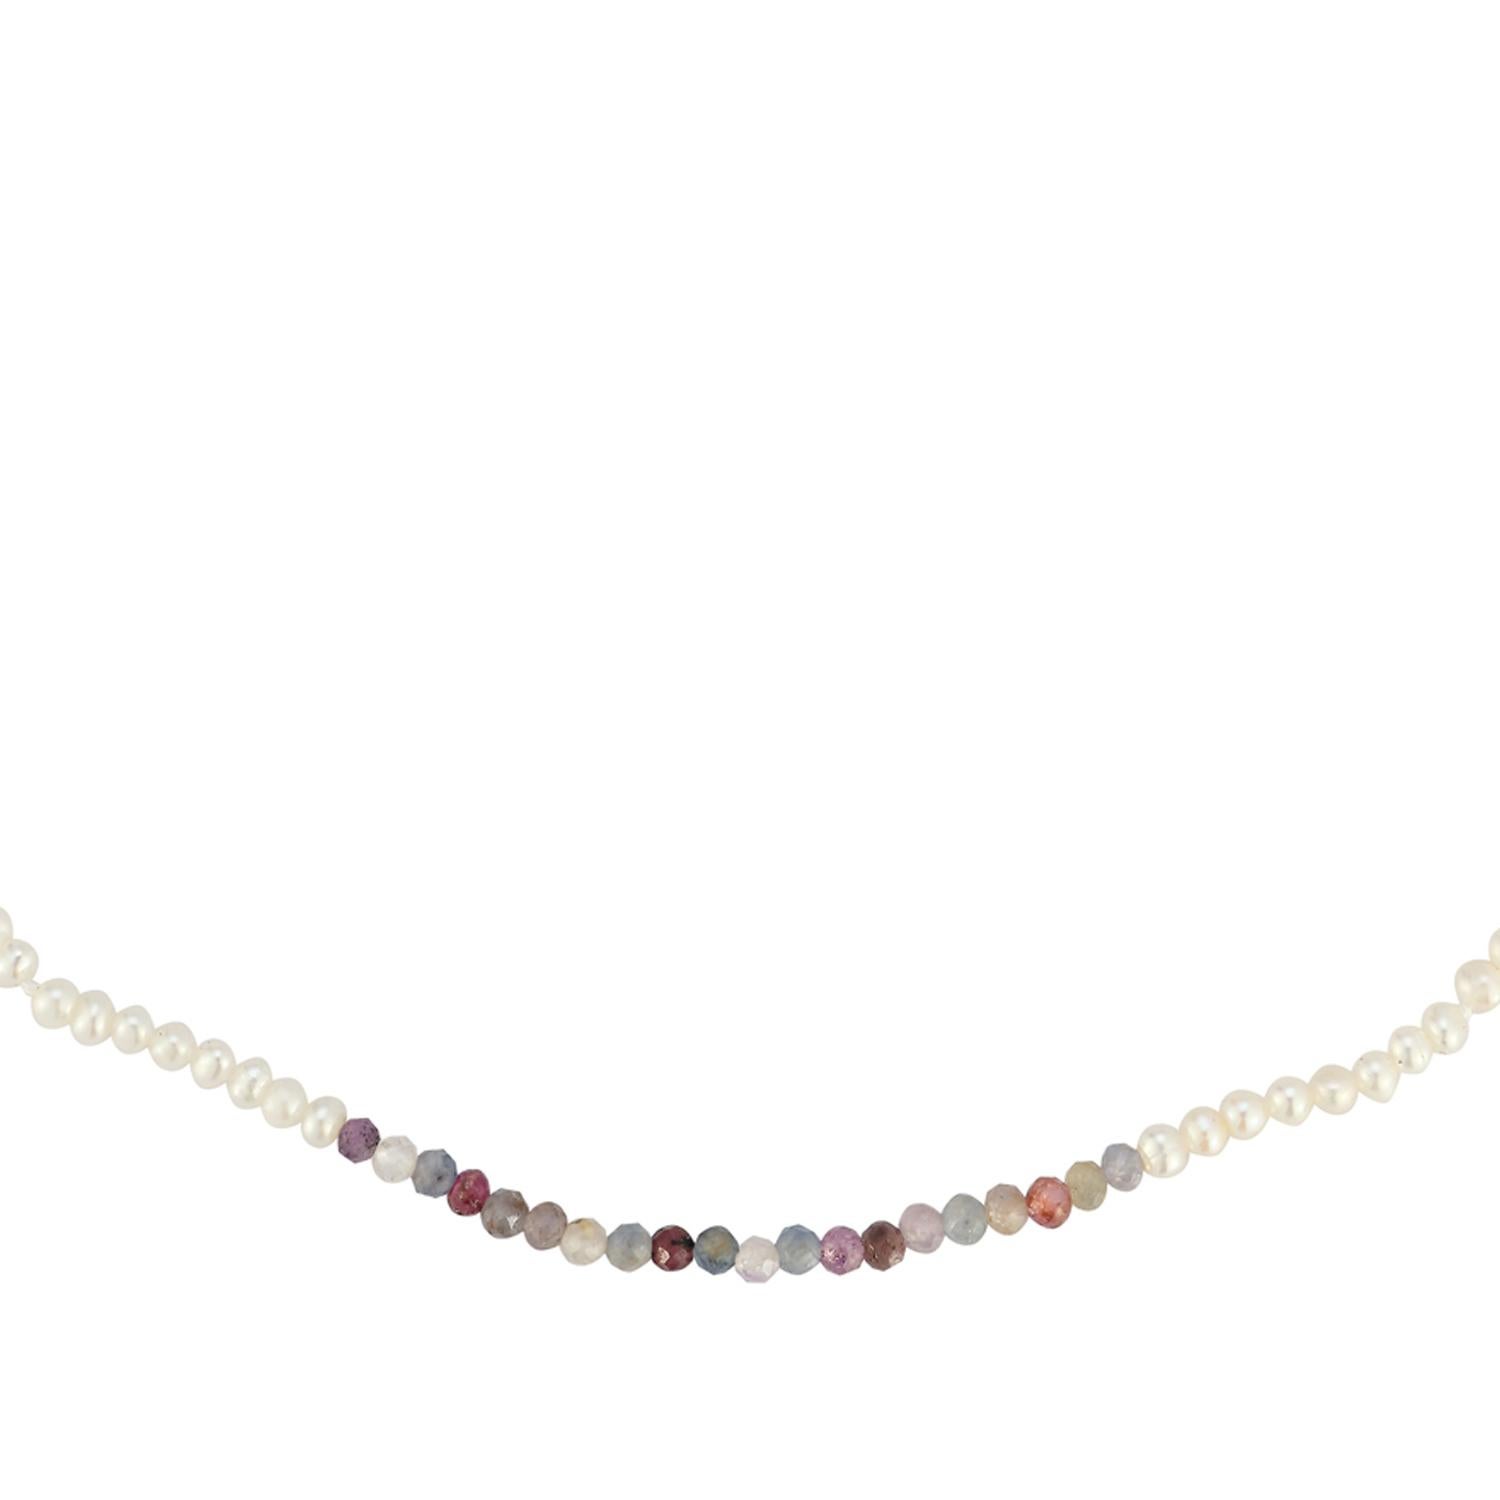 Dies ist kein gewöhnliches Perlen-Kropfband mit einem Farbklecks in Form eines Farbblocks mit facettierten Halbedelsteinen in den Farben Saphir und Rubin. Ein lustiges Lagenstück für alle Jahreszeiten, wenn Sie Ihre Halsketten gerne mit Perlen und